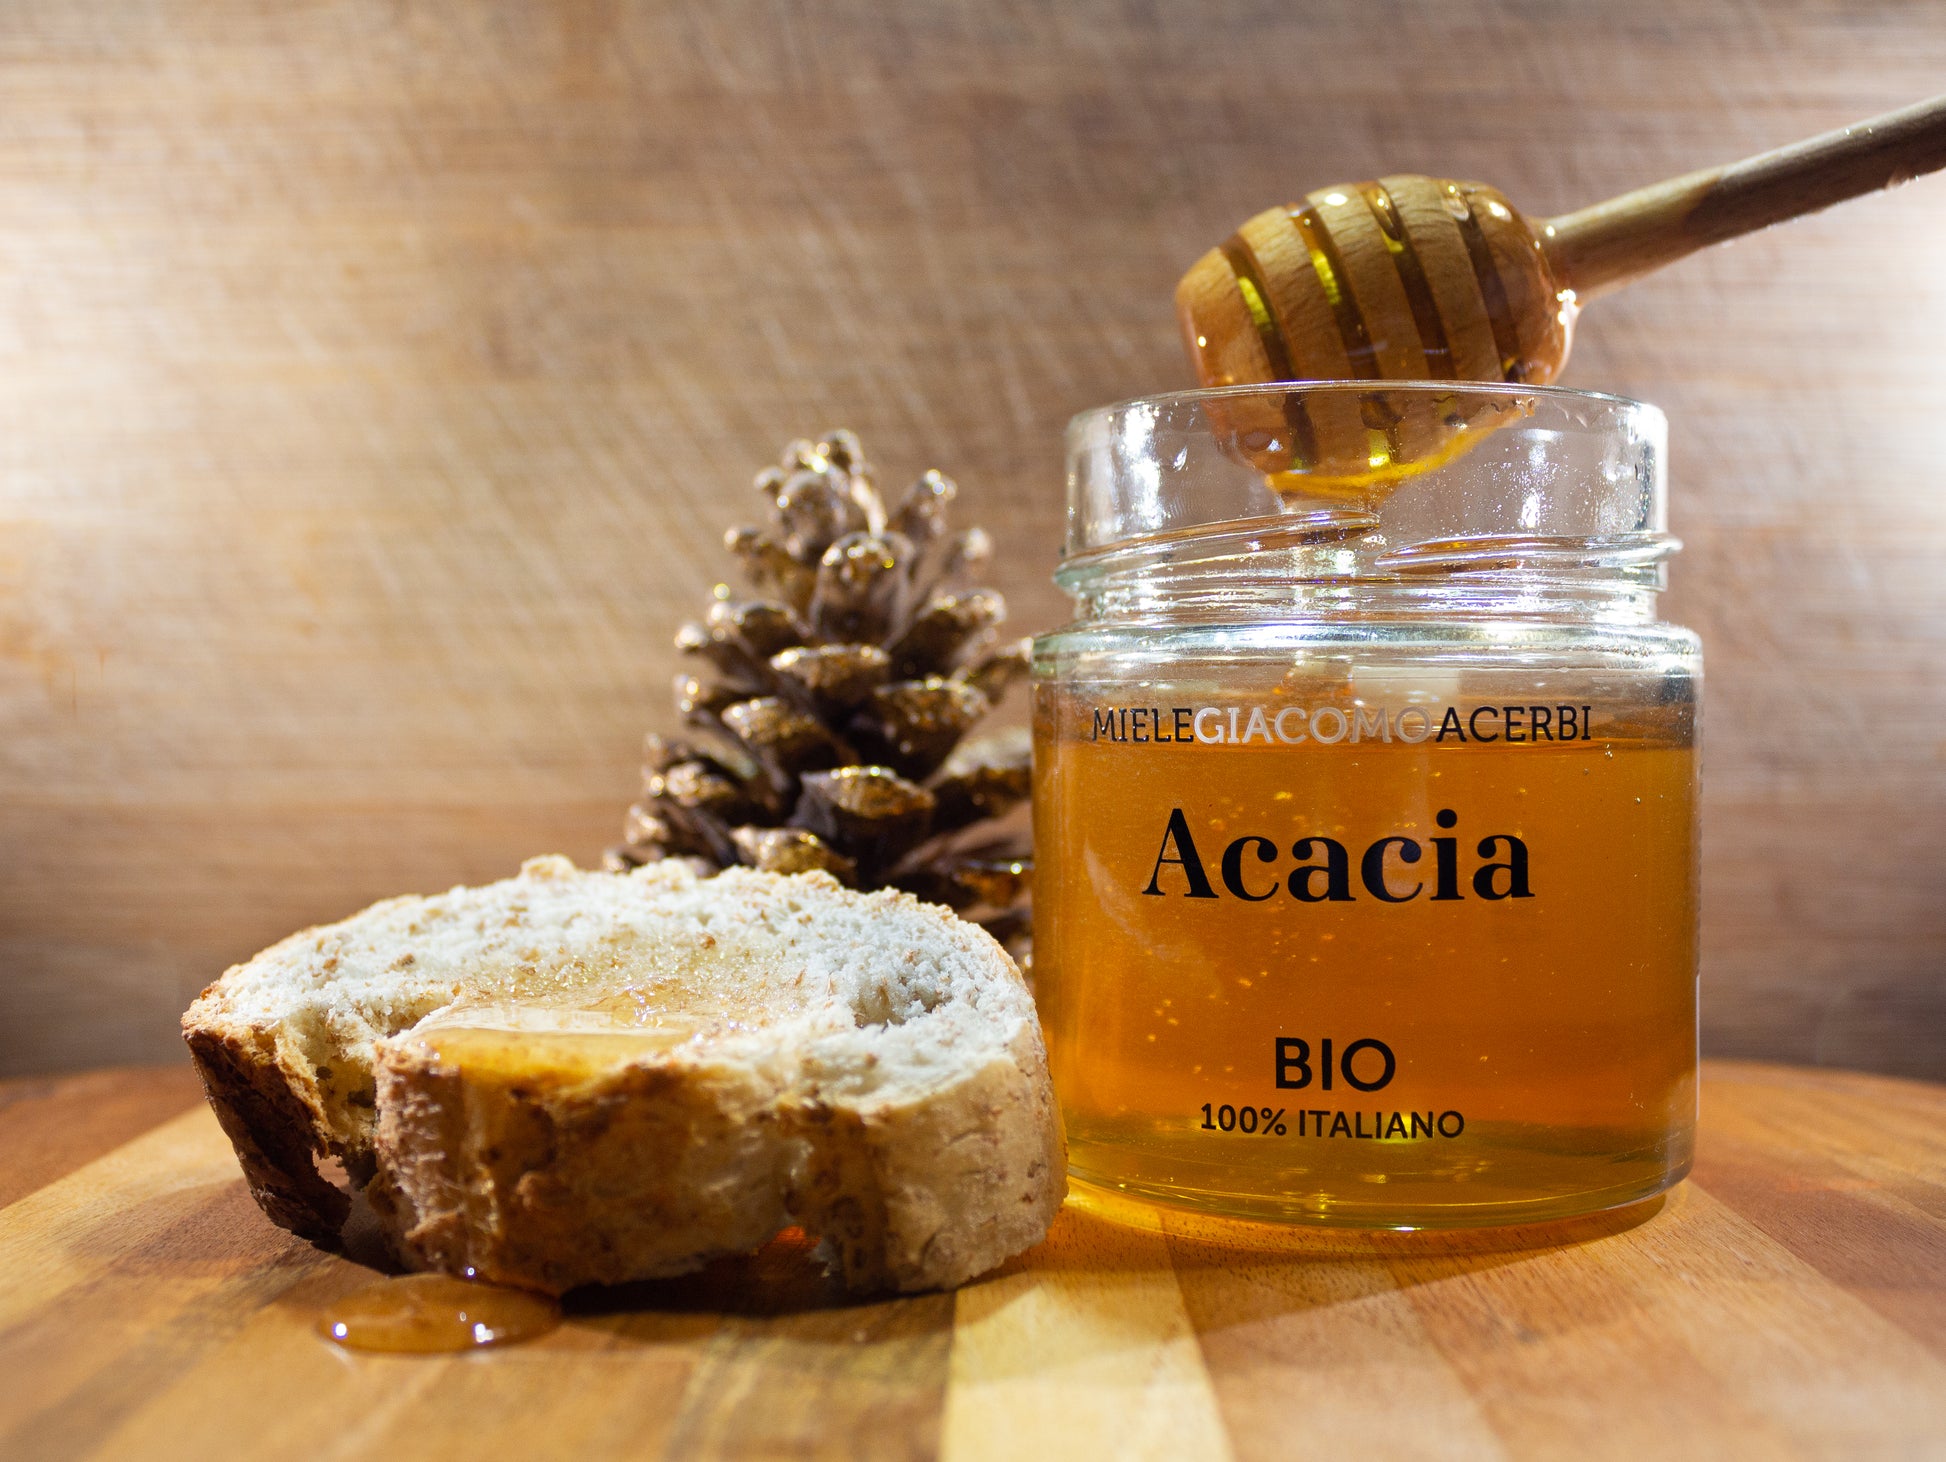 Miele d'Acacia con ambientazione in legno e pigne, spalmato su una fetta di pane